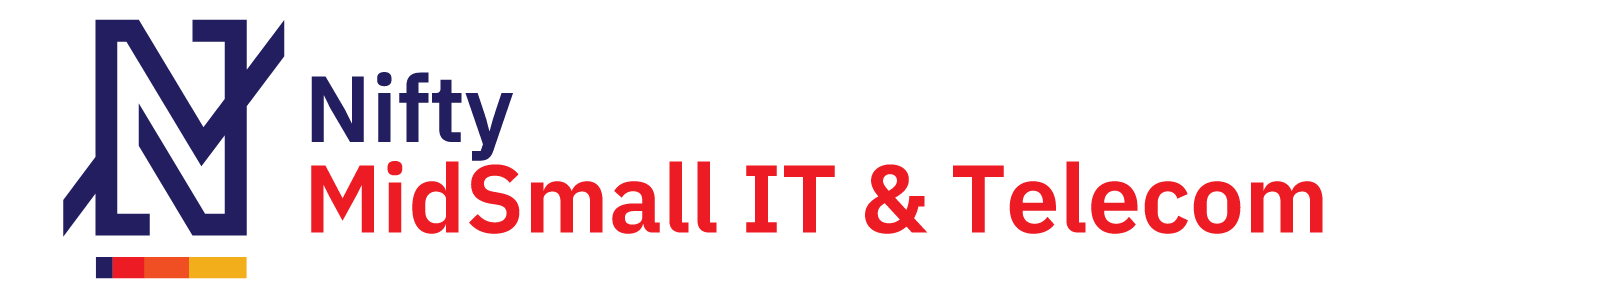 Nifty MidSmall IT & Telecom logo